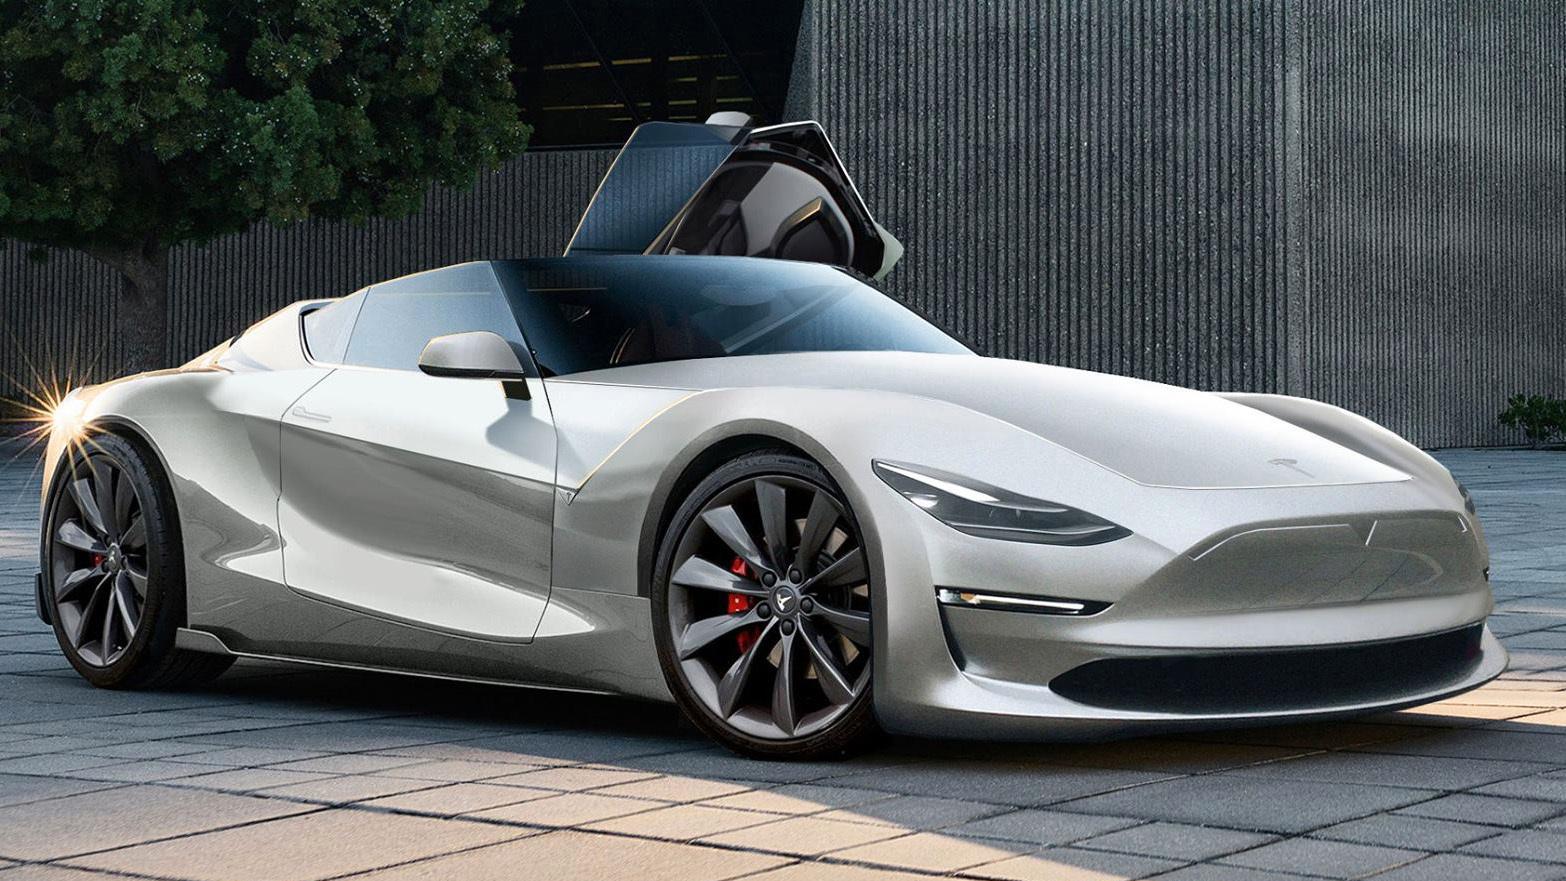 Tesla utvider vervekampanjen sin: Frister med en gratis Tesla Roadster